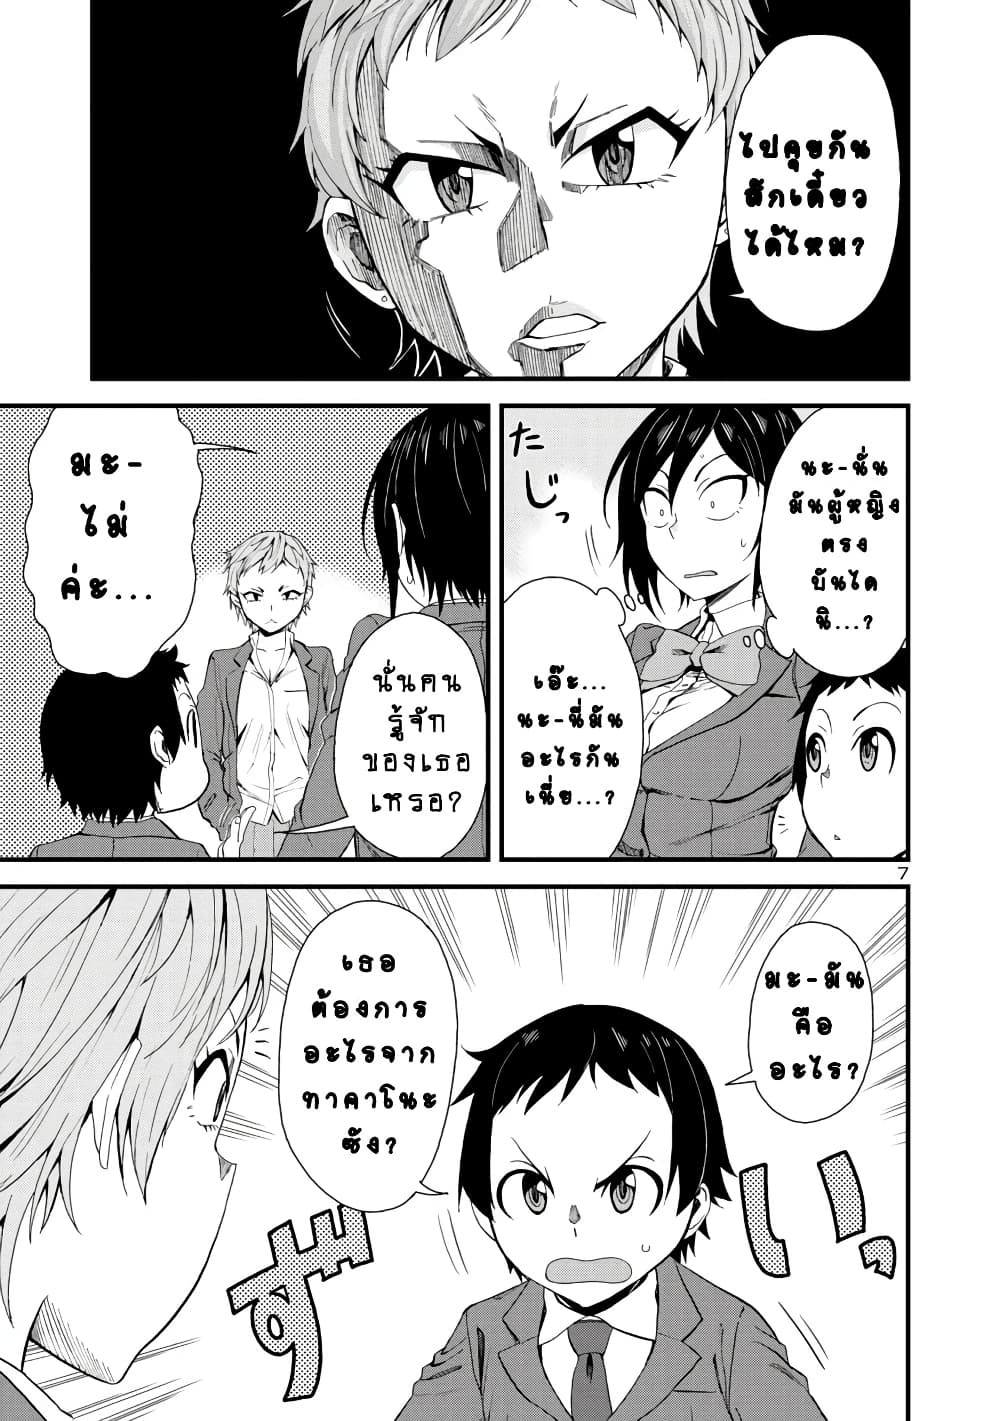 Hitomi-chan Is Shy With Strangers วันๆของน้องฮิโตมิก็เป็นแบบนี้แหล่ะ 14-14